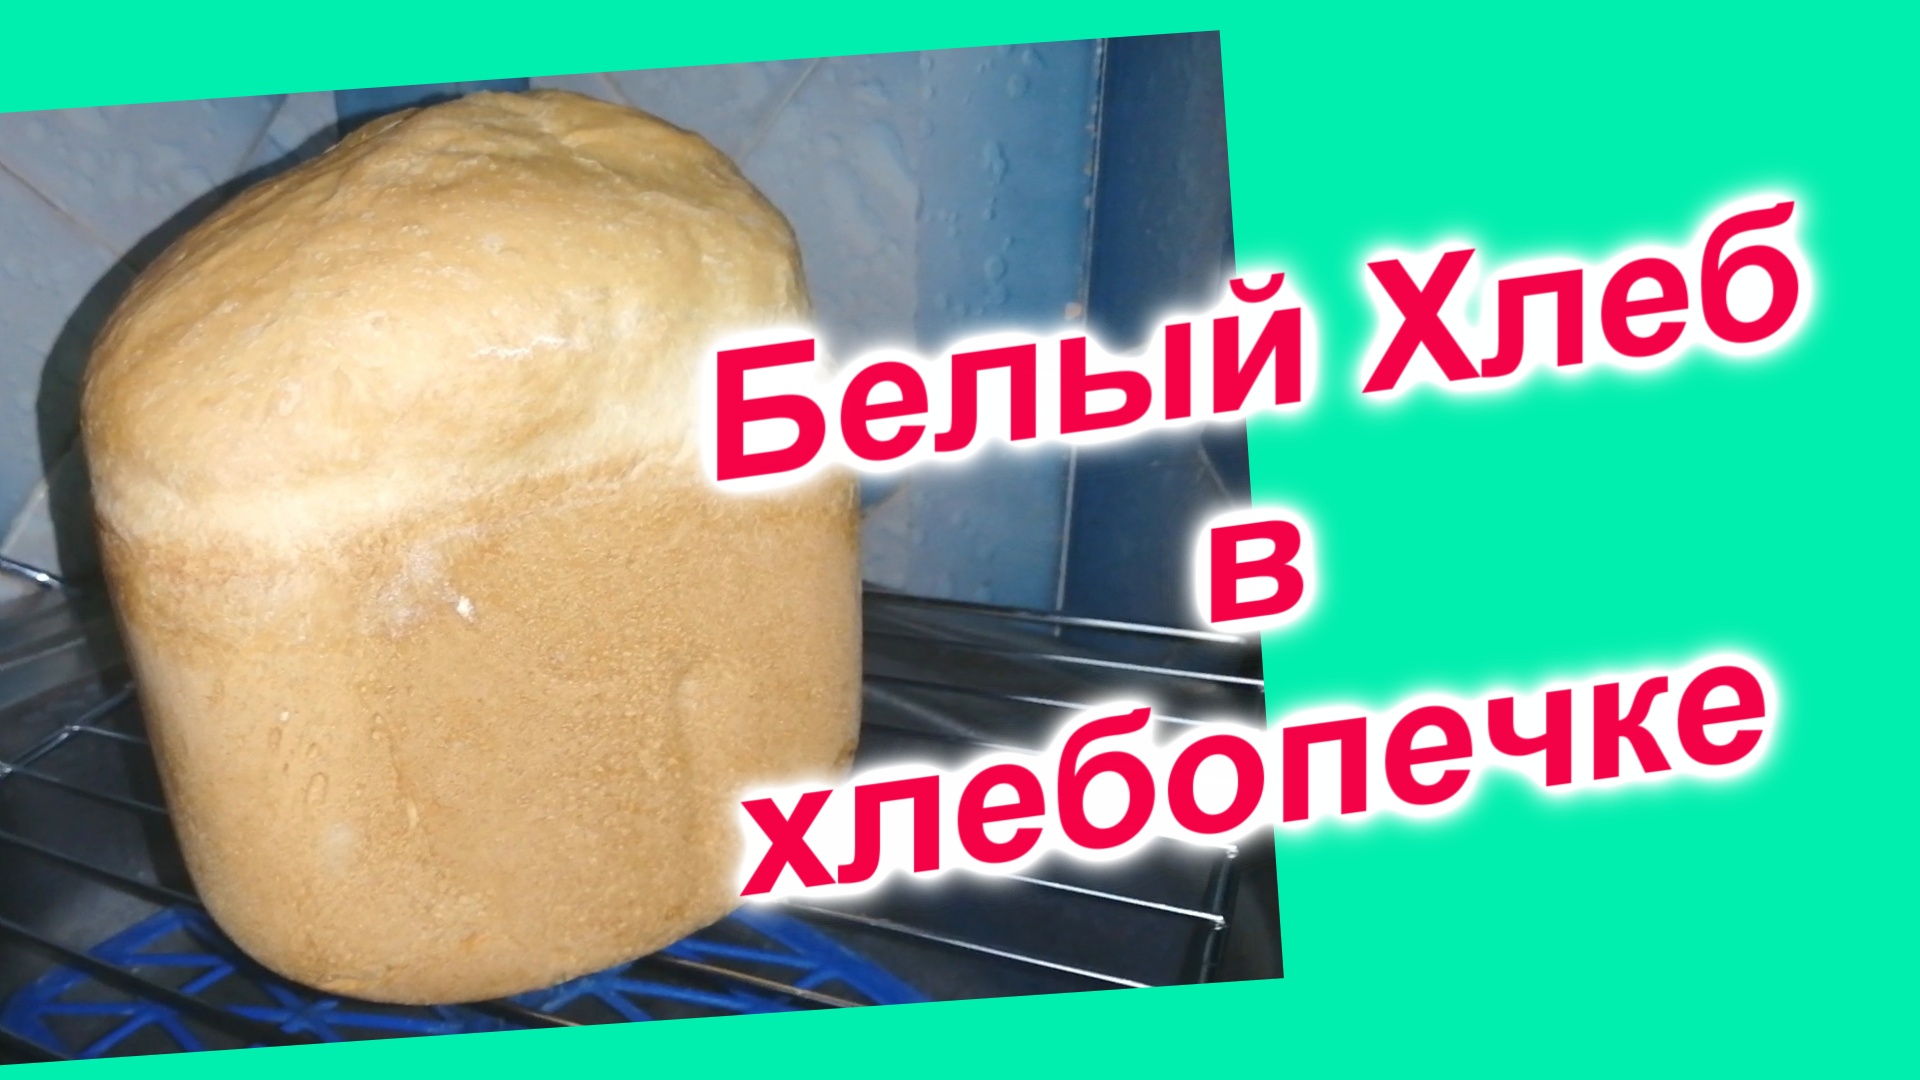 Как испечь Хлеб домашний в хлебопечке (150)/Подробный рецепт белого хлеба/Хлебопечка Kenwood 250BM